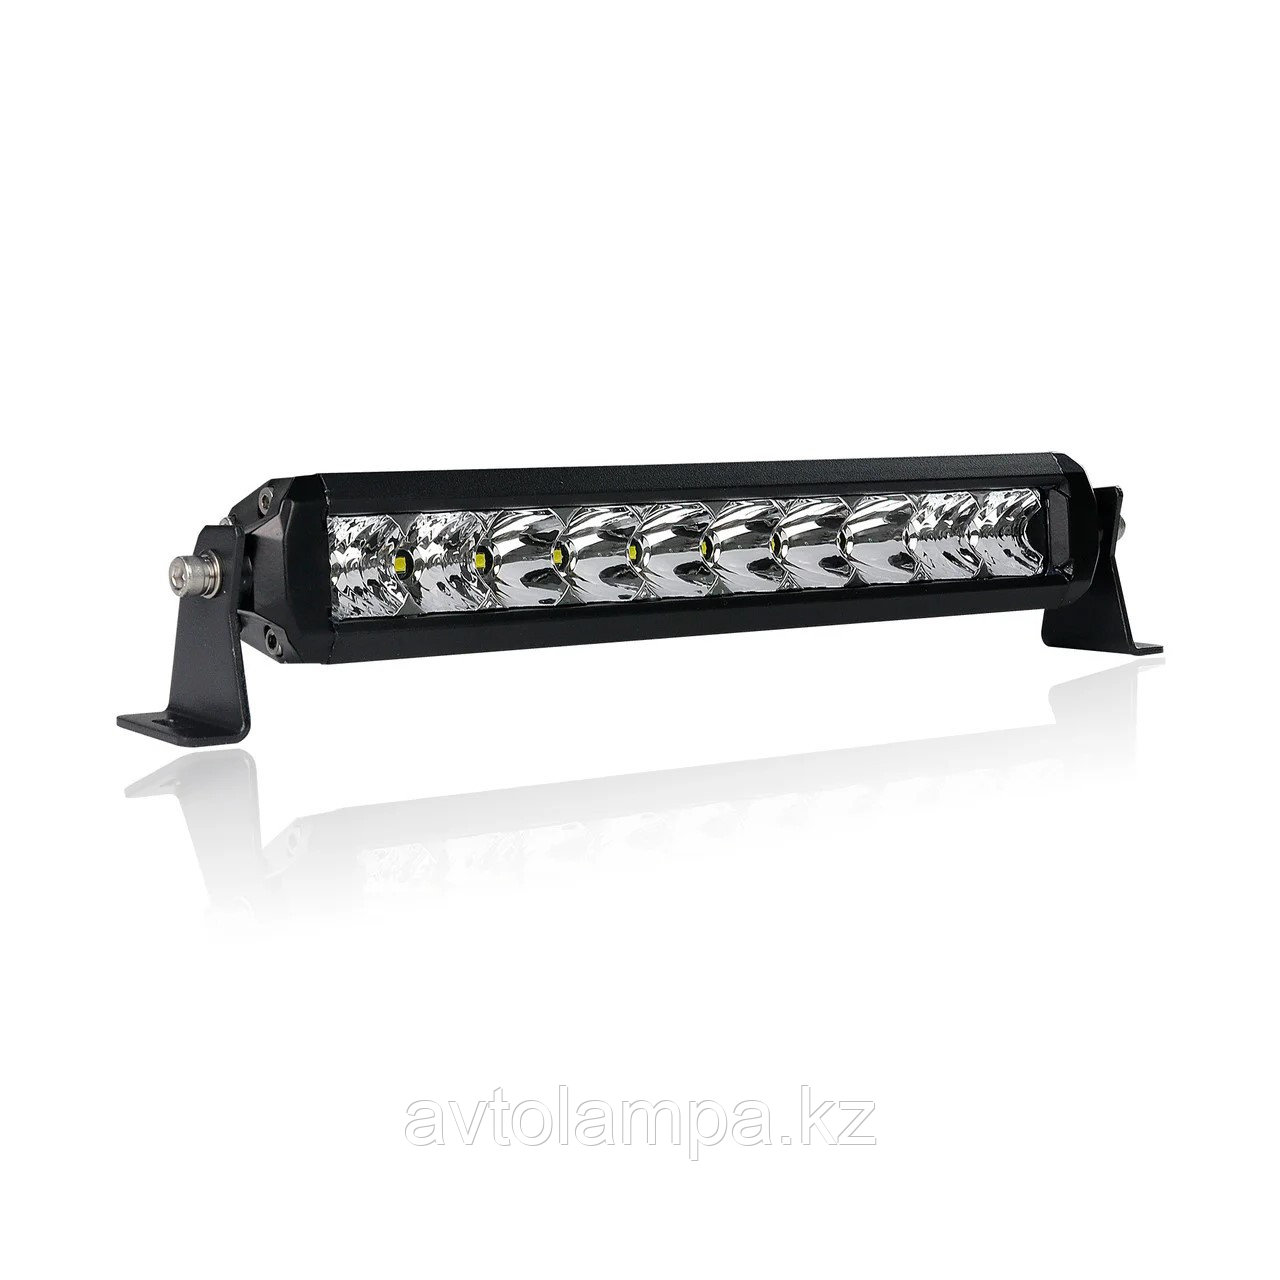 AURORA ECO ALO-S5D-10 25,4 см Однорядная панель LED светодиодная